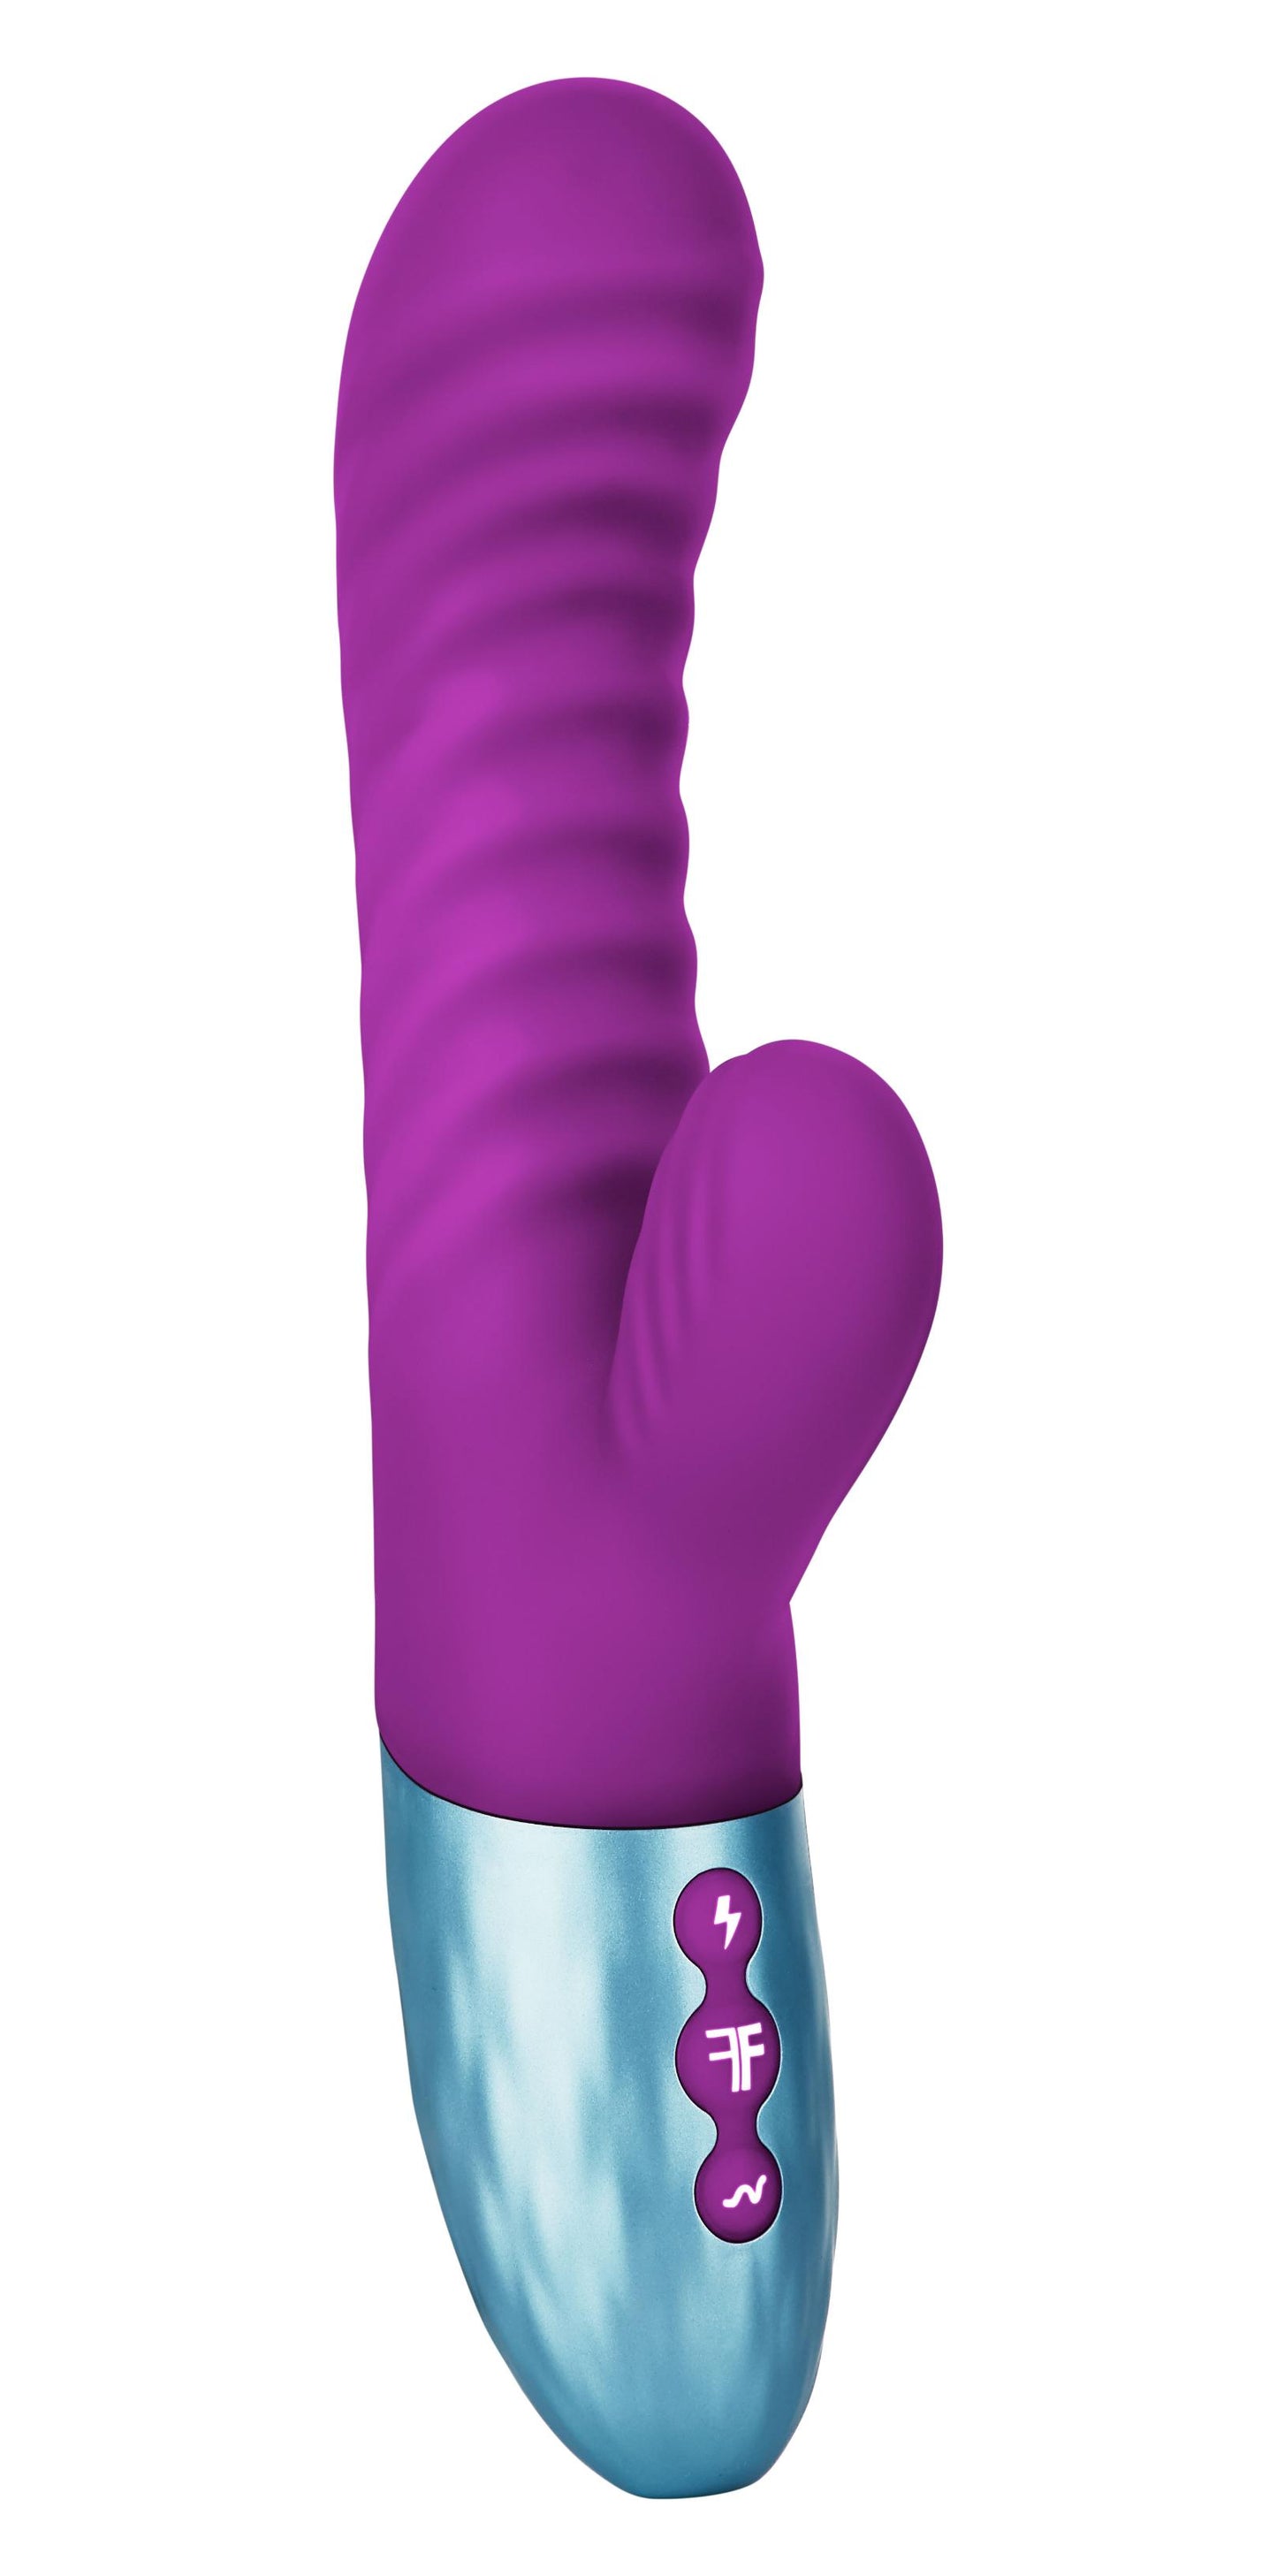 Delola Liquid Silicone Rabbit - Purple